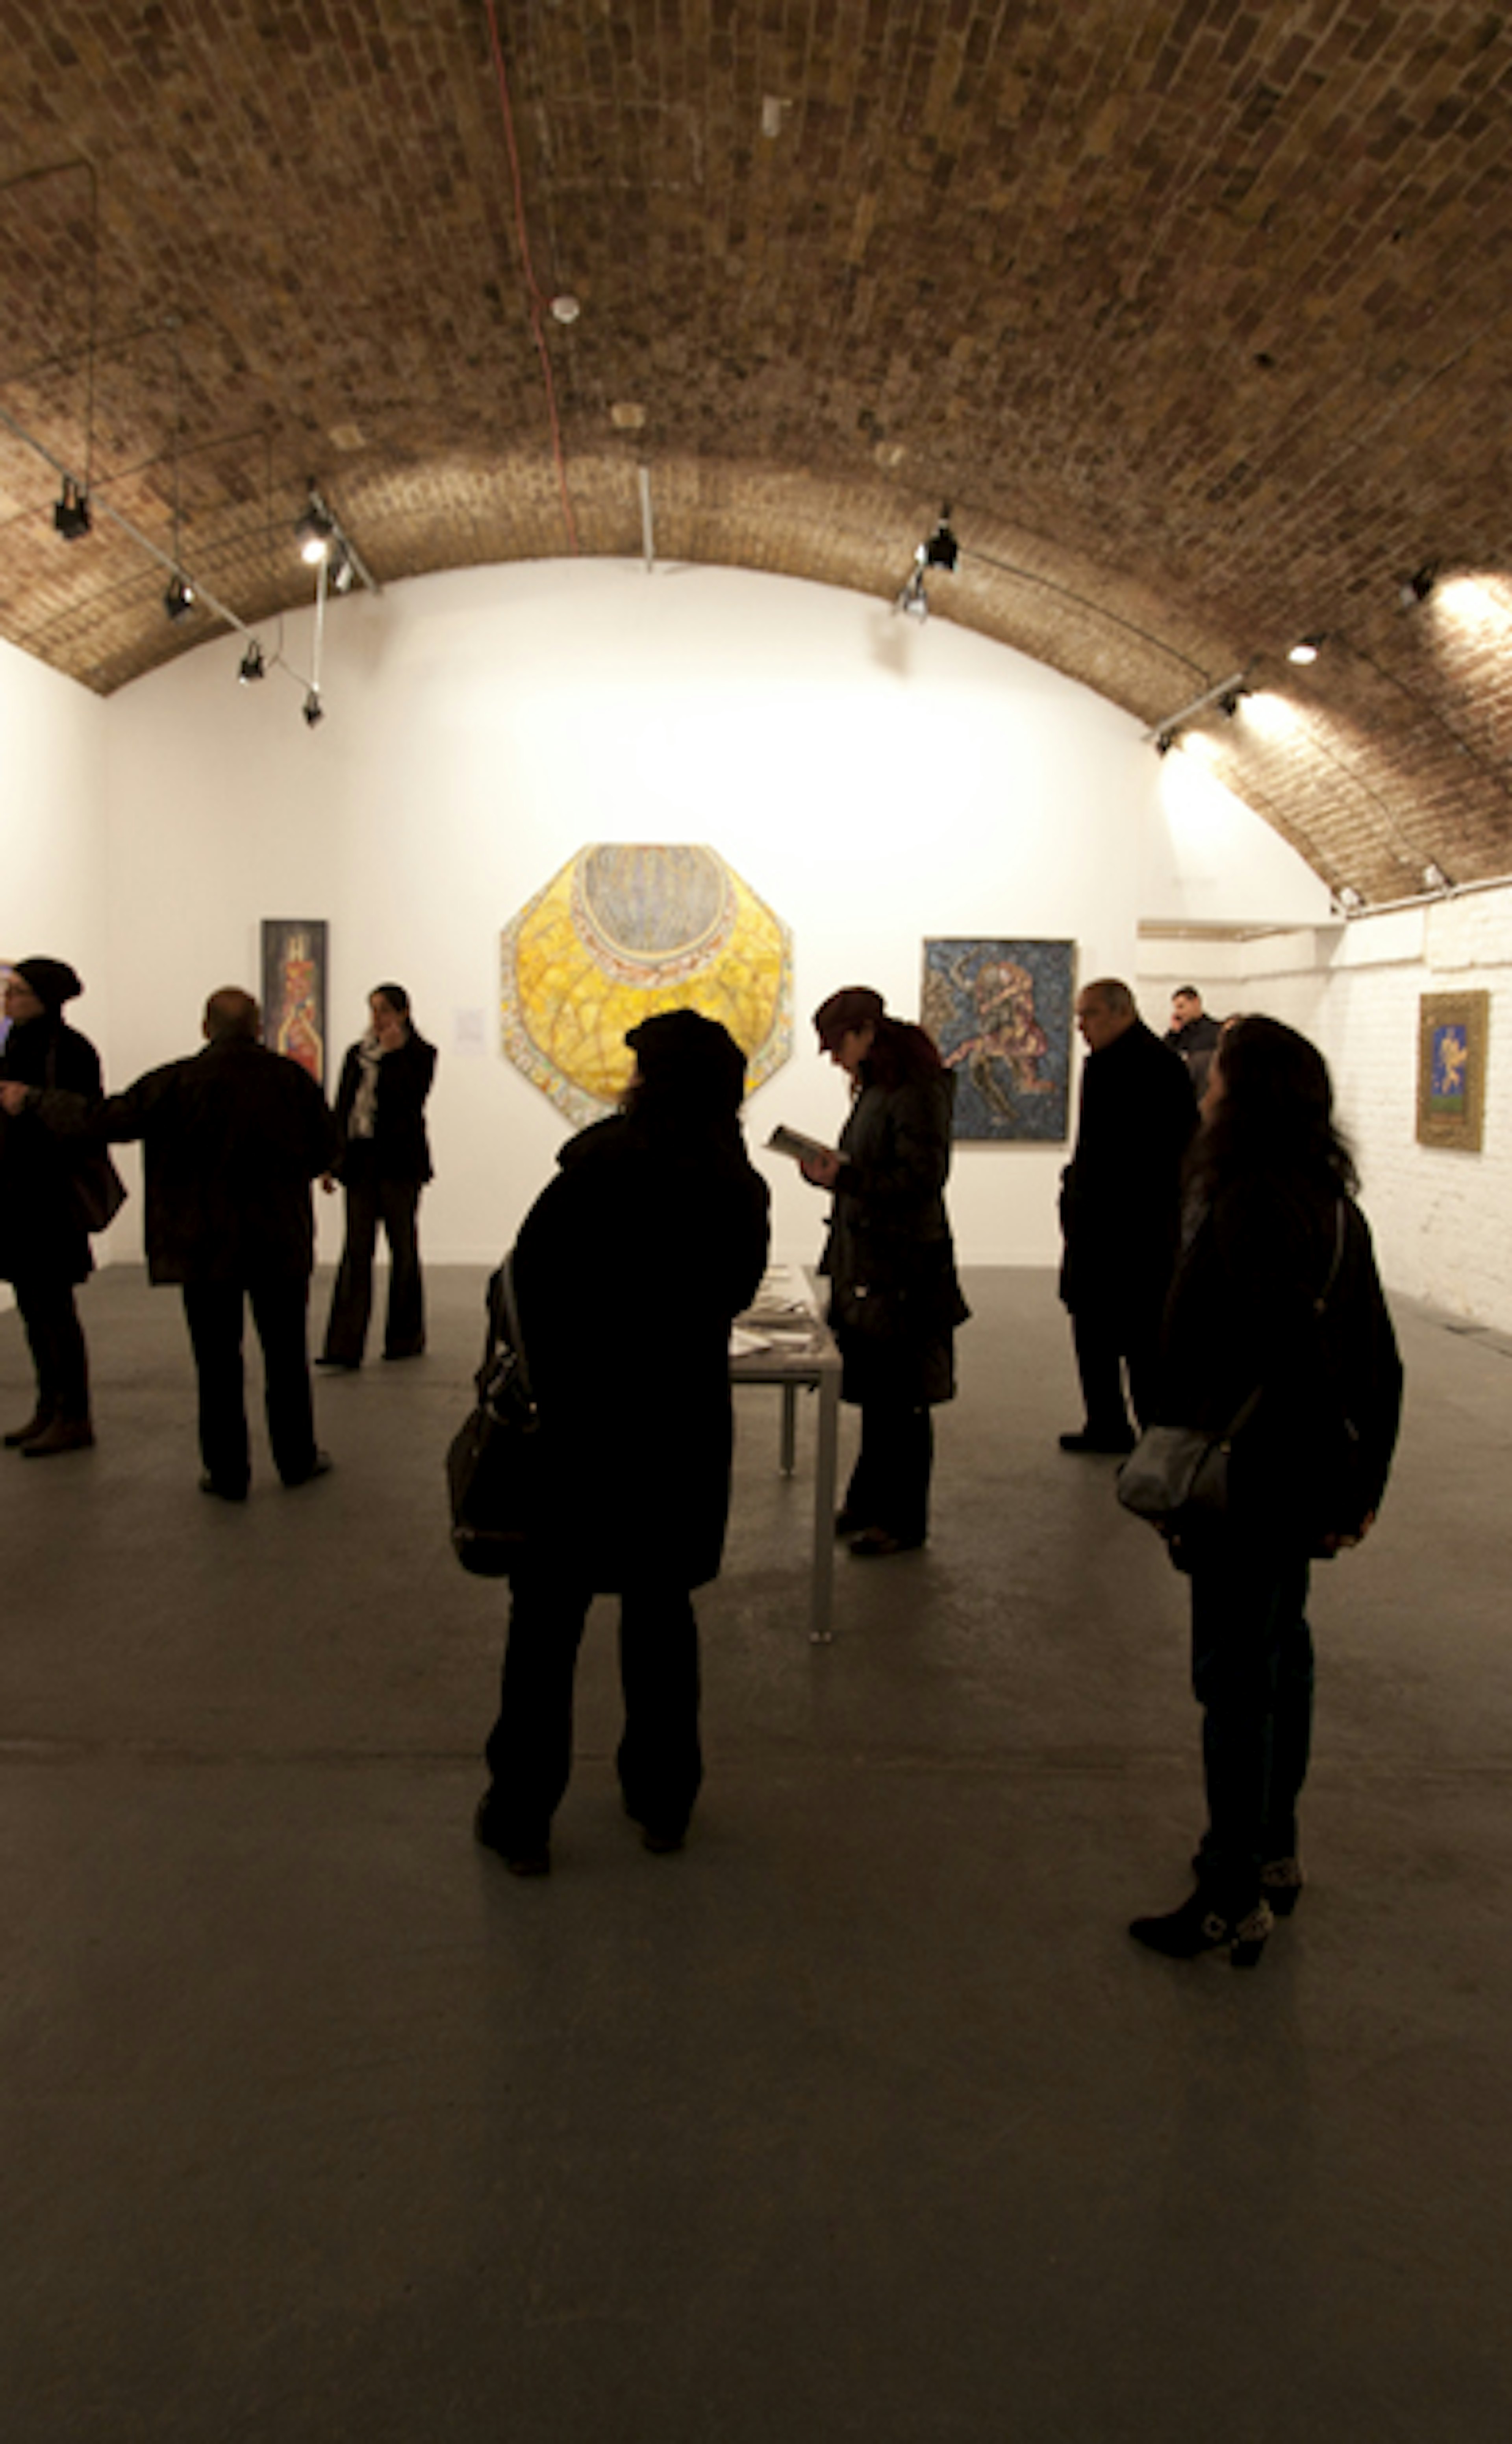 Exhibition Venues - Hoxton Arches